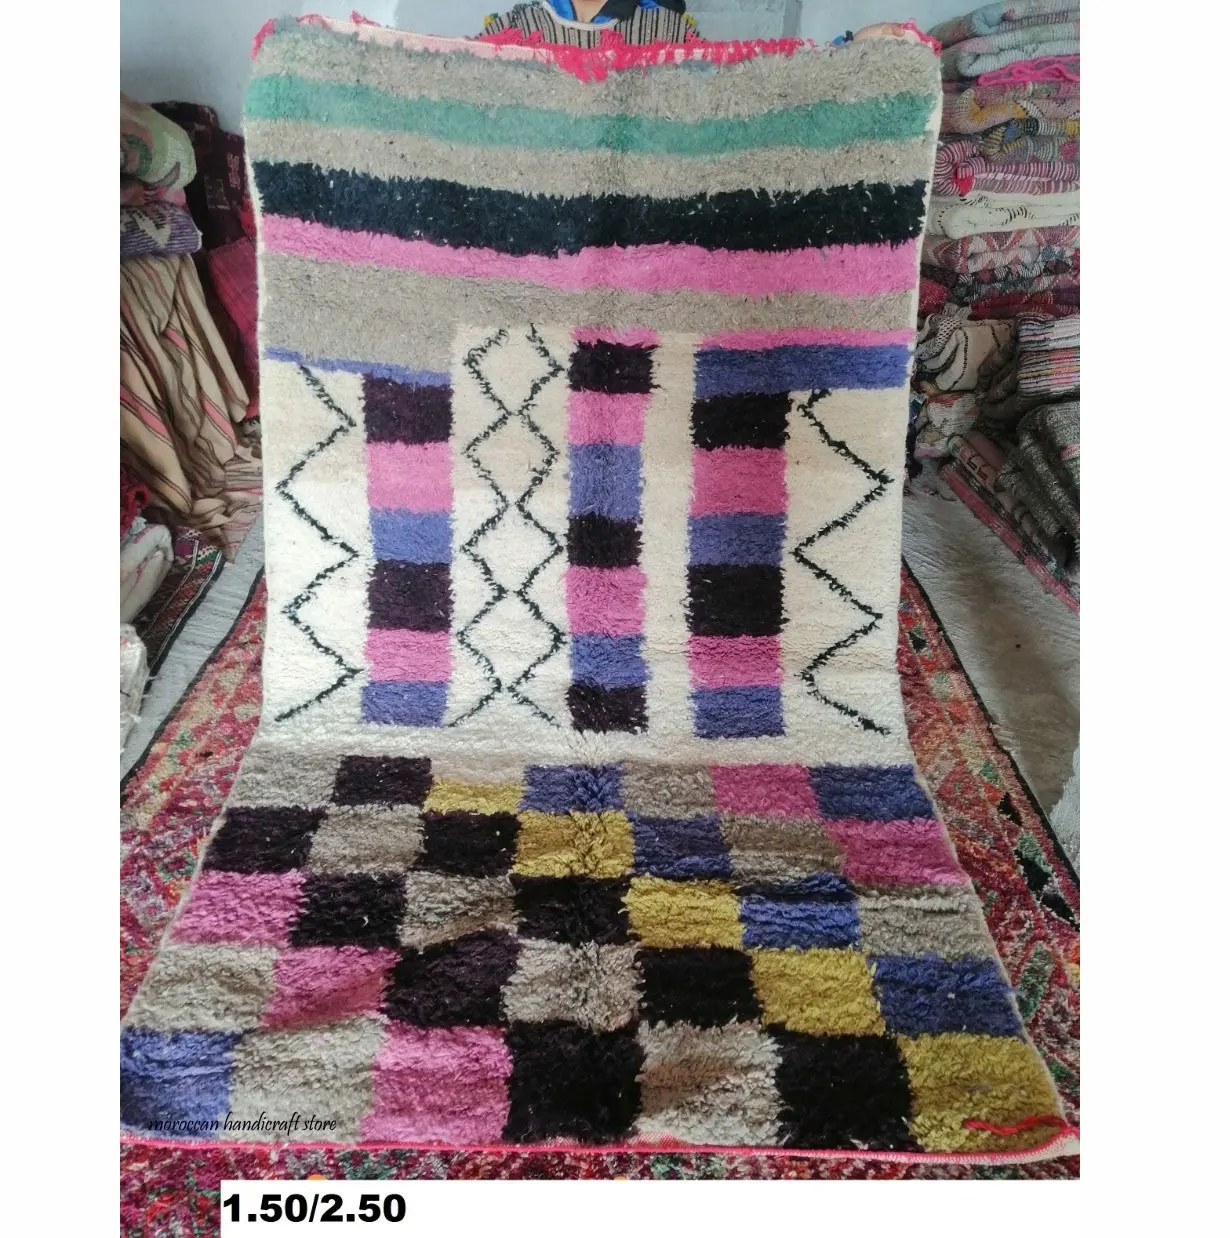 Modello di soggiorno tappeto Marocchino Traliccio modo di Disegno coperta di Zona, di grandi dimensioni da comodino decorativa tappeto, di tipo moderno